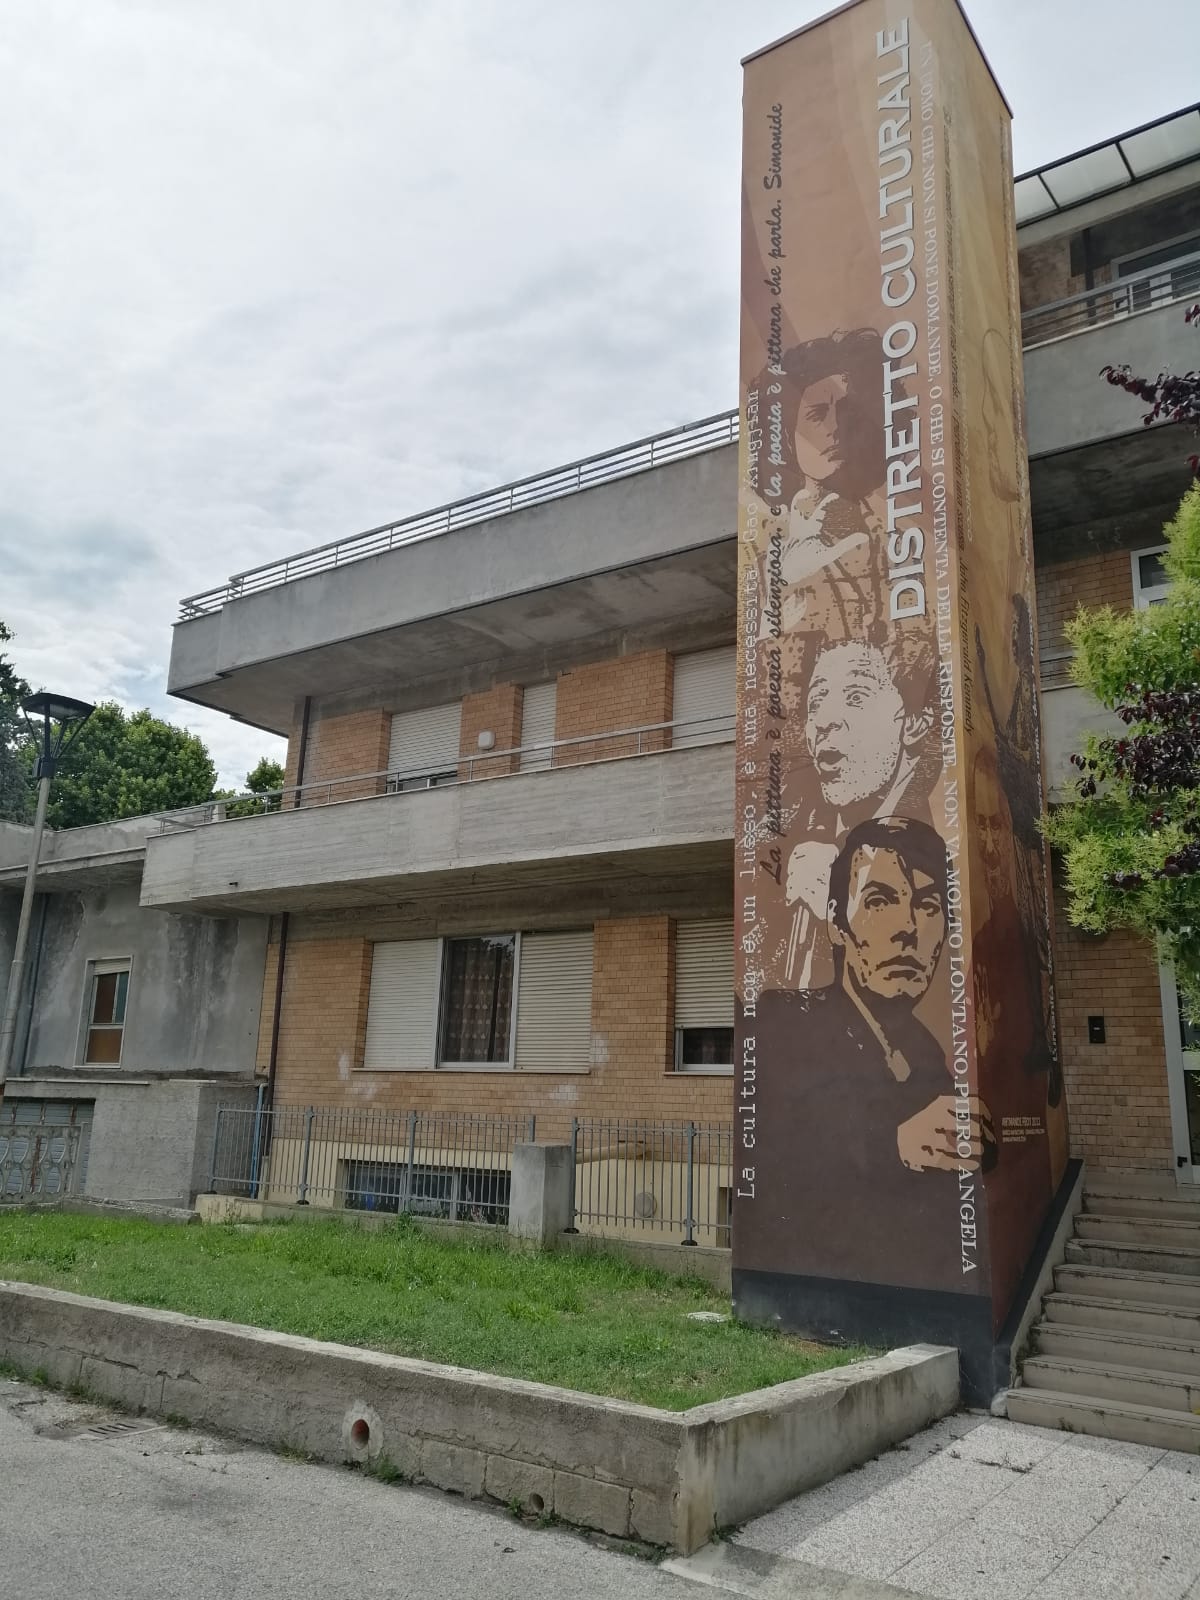 Lavori di recupero nell’ex “Casa Parrocchiale” di Scerne di Pineto: diventerà Teatro e Sala Polivalente